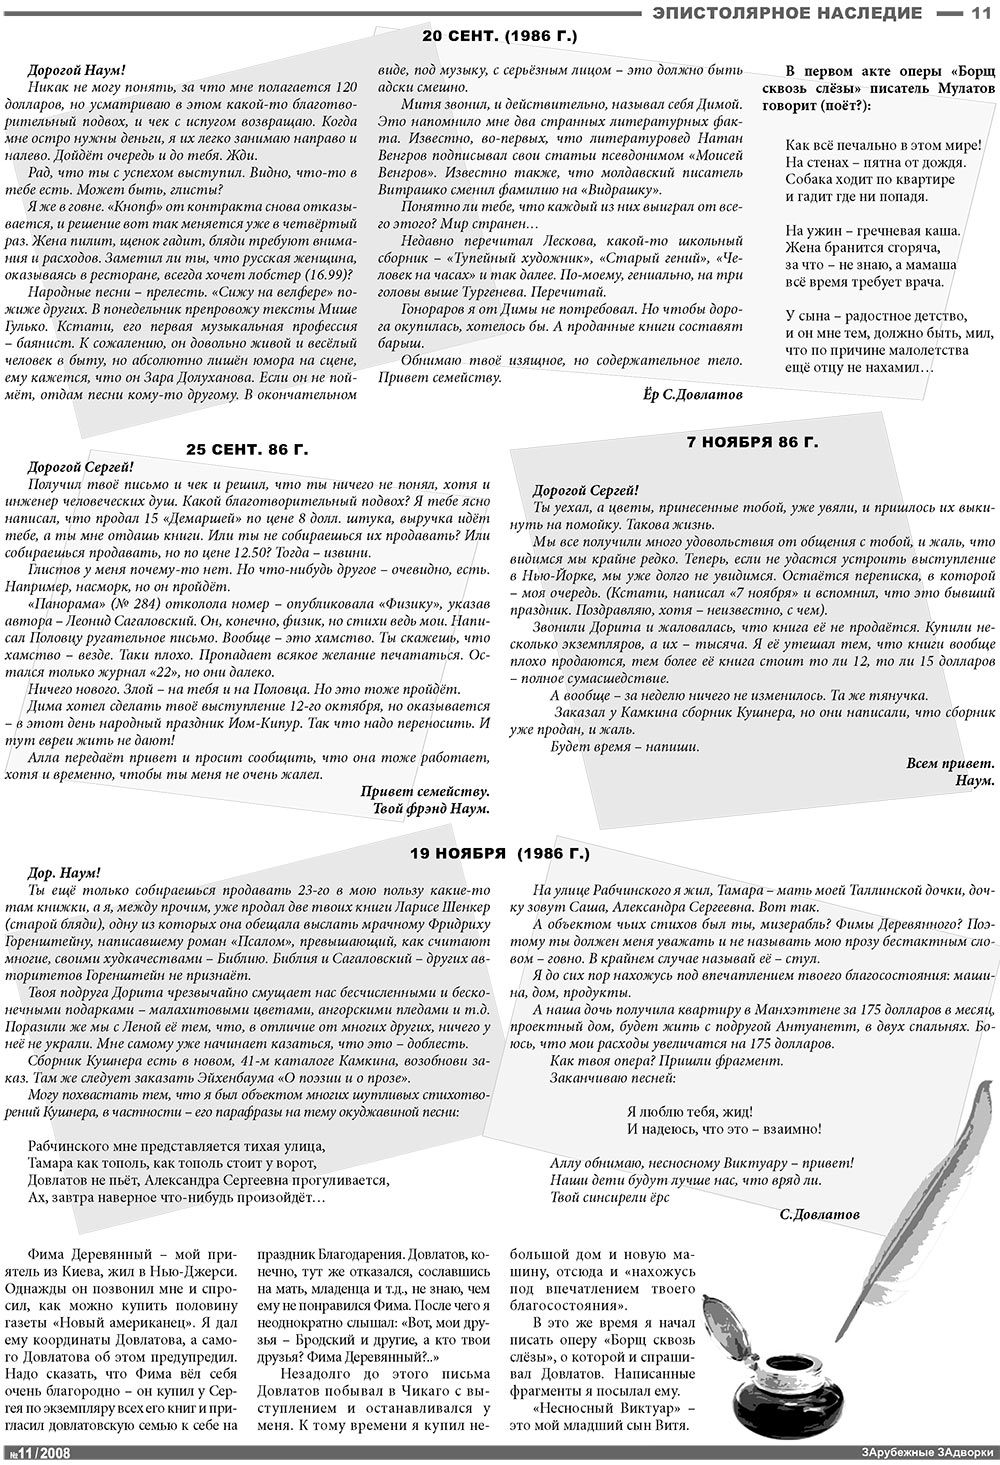 Известия BW, газета. 2008 №11 стр.11